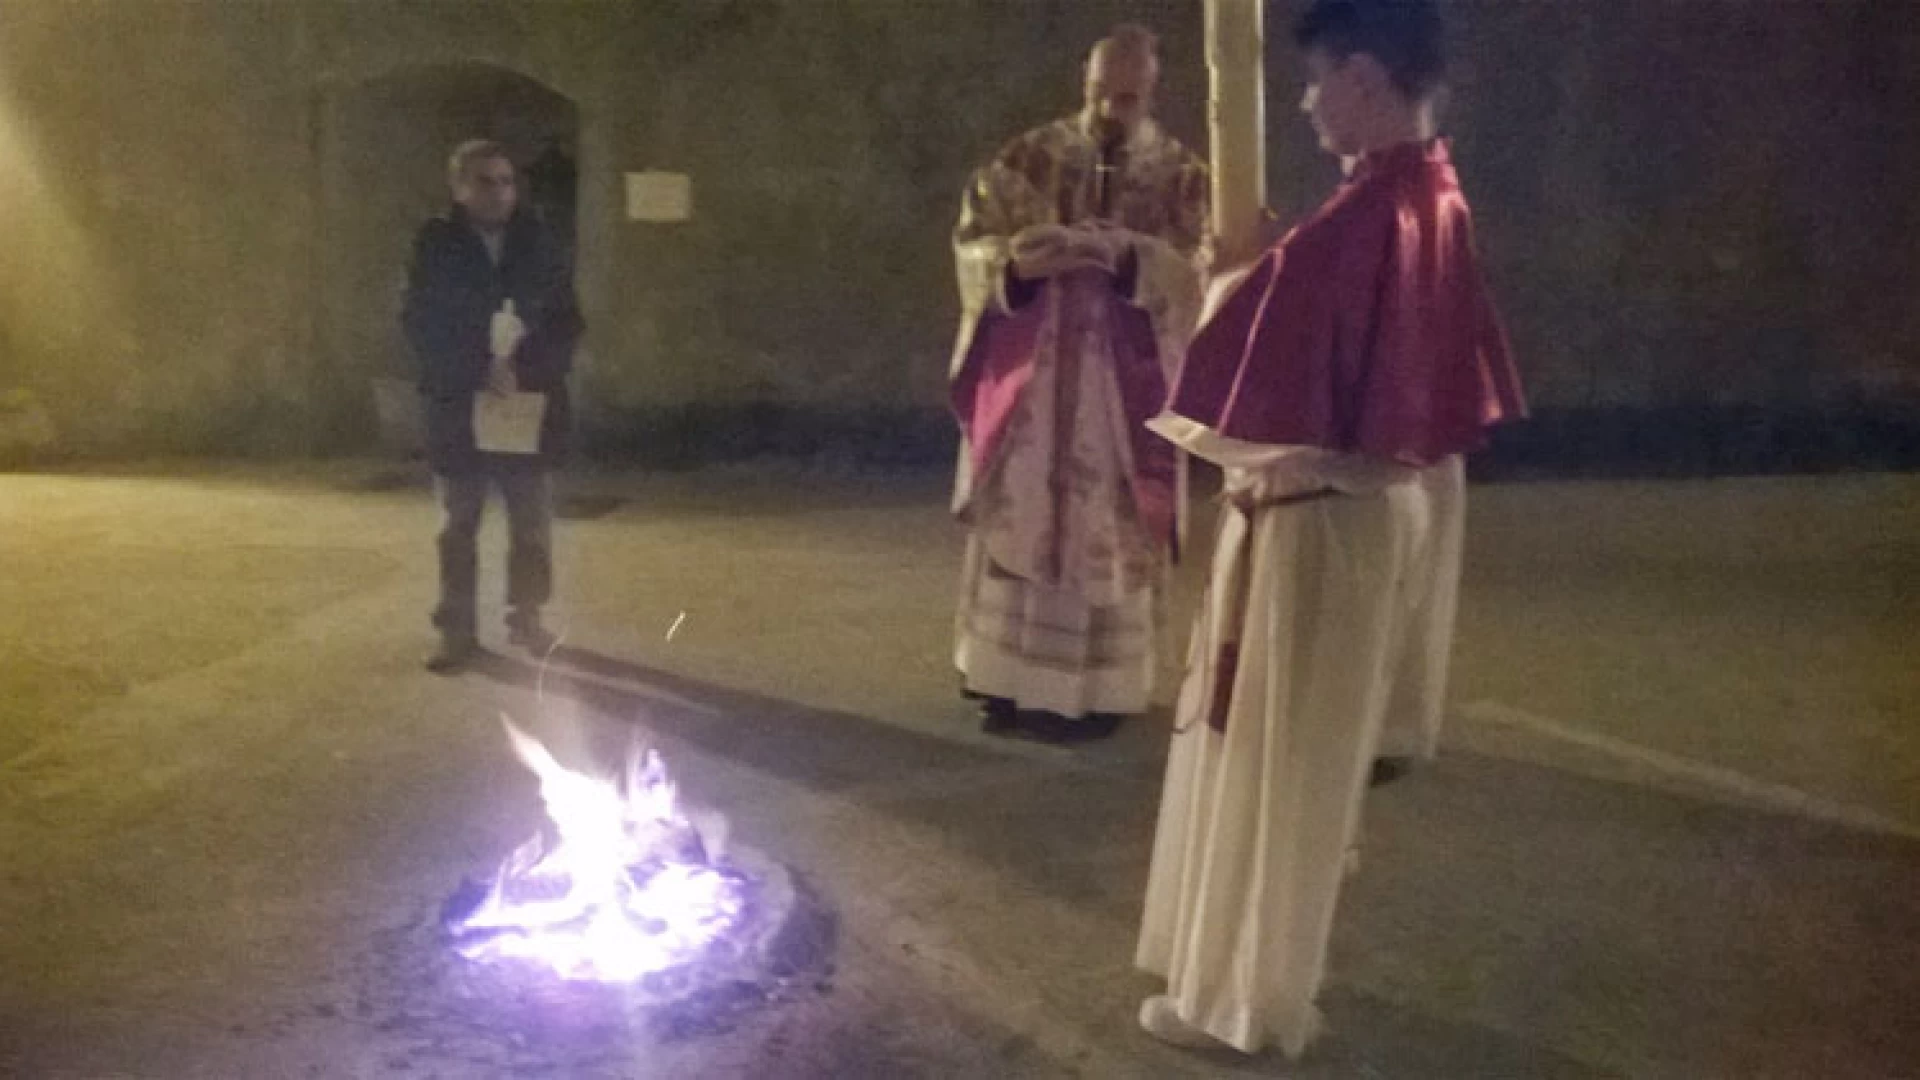 Colli a Volturno: la veglia solenne e la santa messa domenicale concludono i riti pasquali collesi.